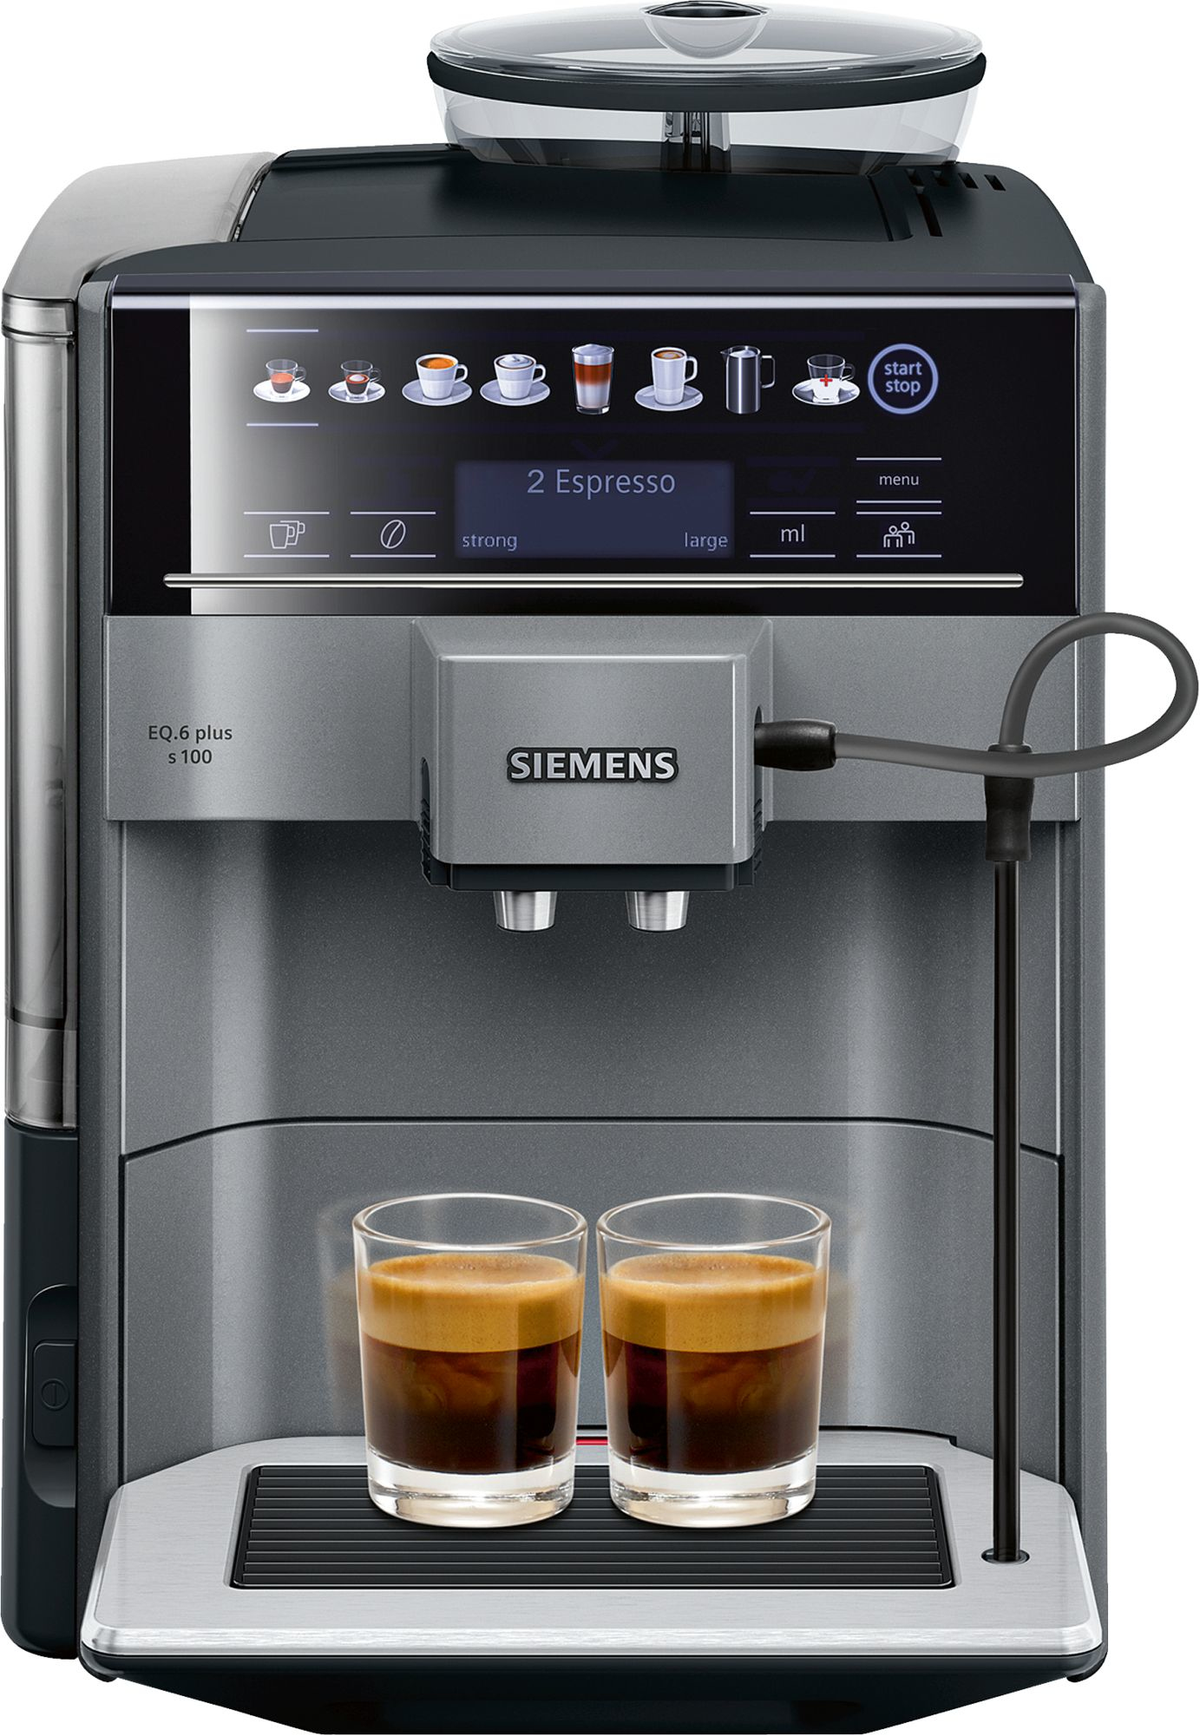 SIEMENS Espresso EQ.6 plus s100 titan/schwarz Espressomaschine